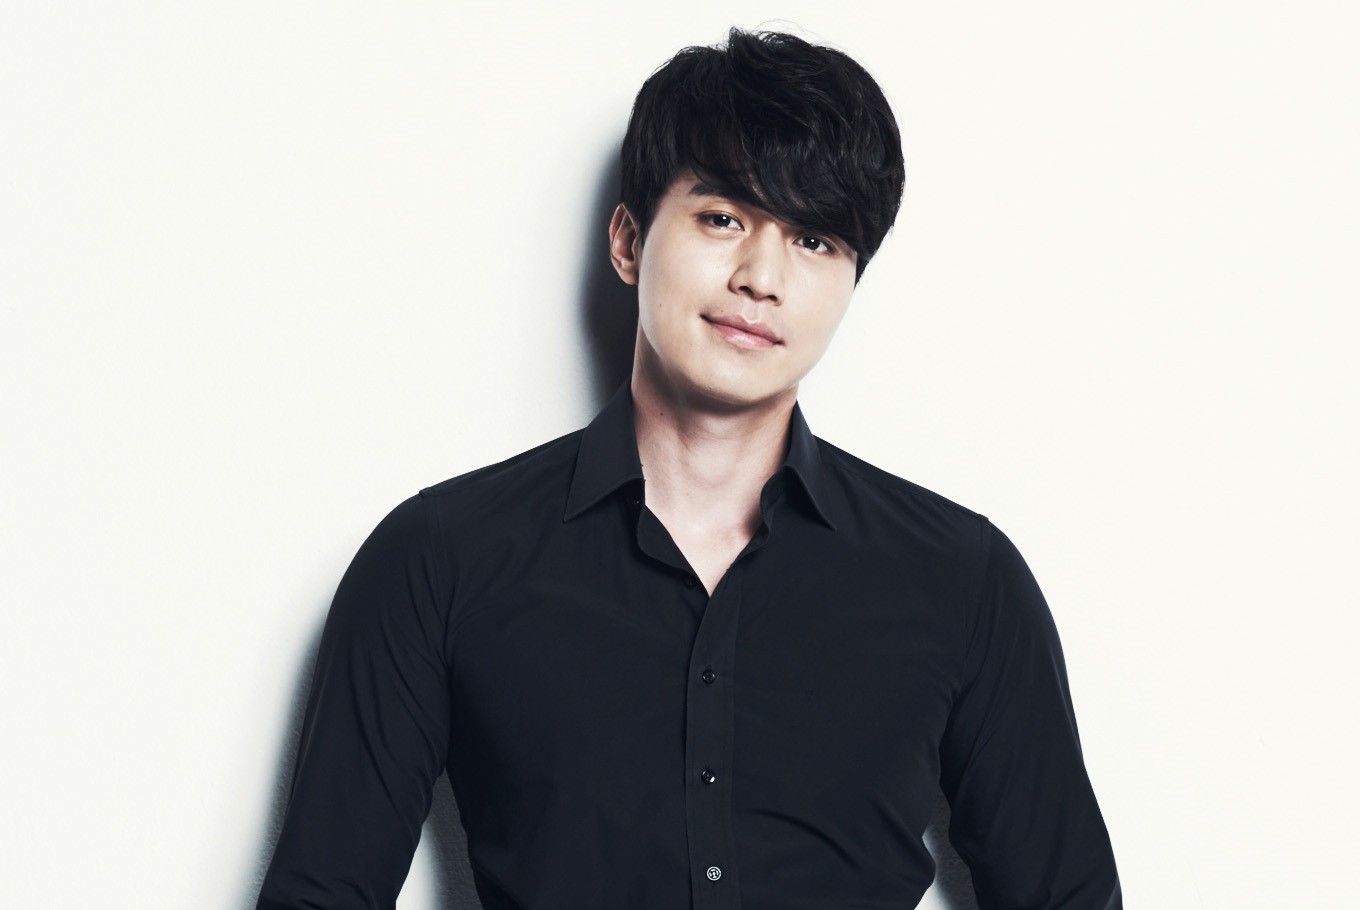 [Actor Spotlight] Lee Dong-wook